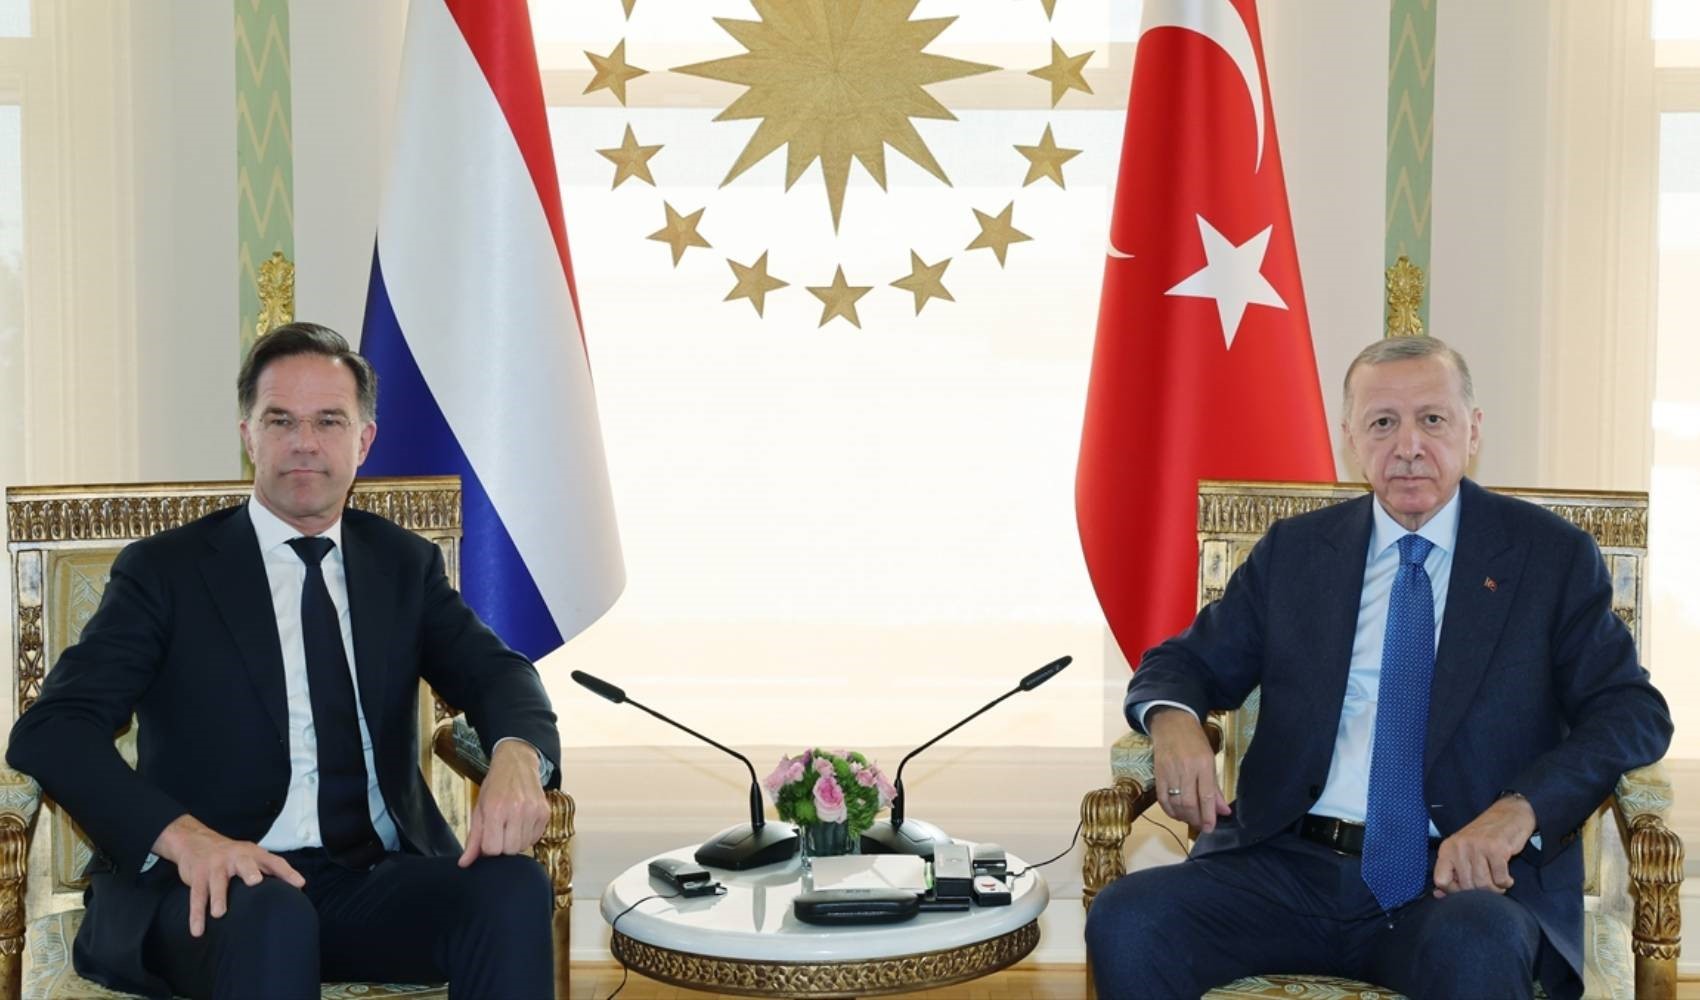 Hollanda Başbakanı Rutte, Erdoğan'dan destek istiyor: 'Büyük bir avantaj'